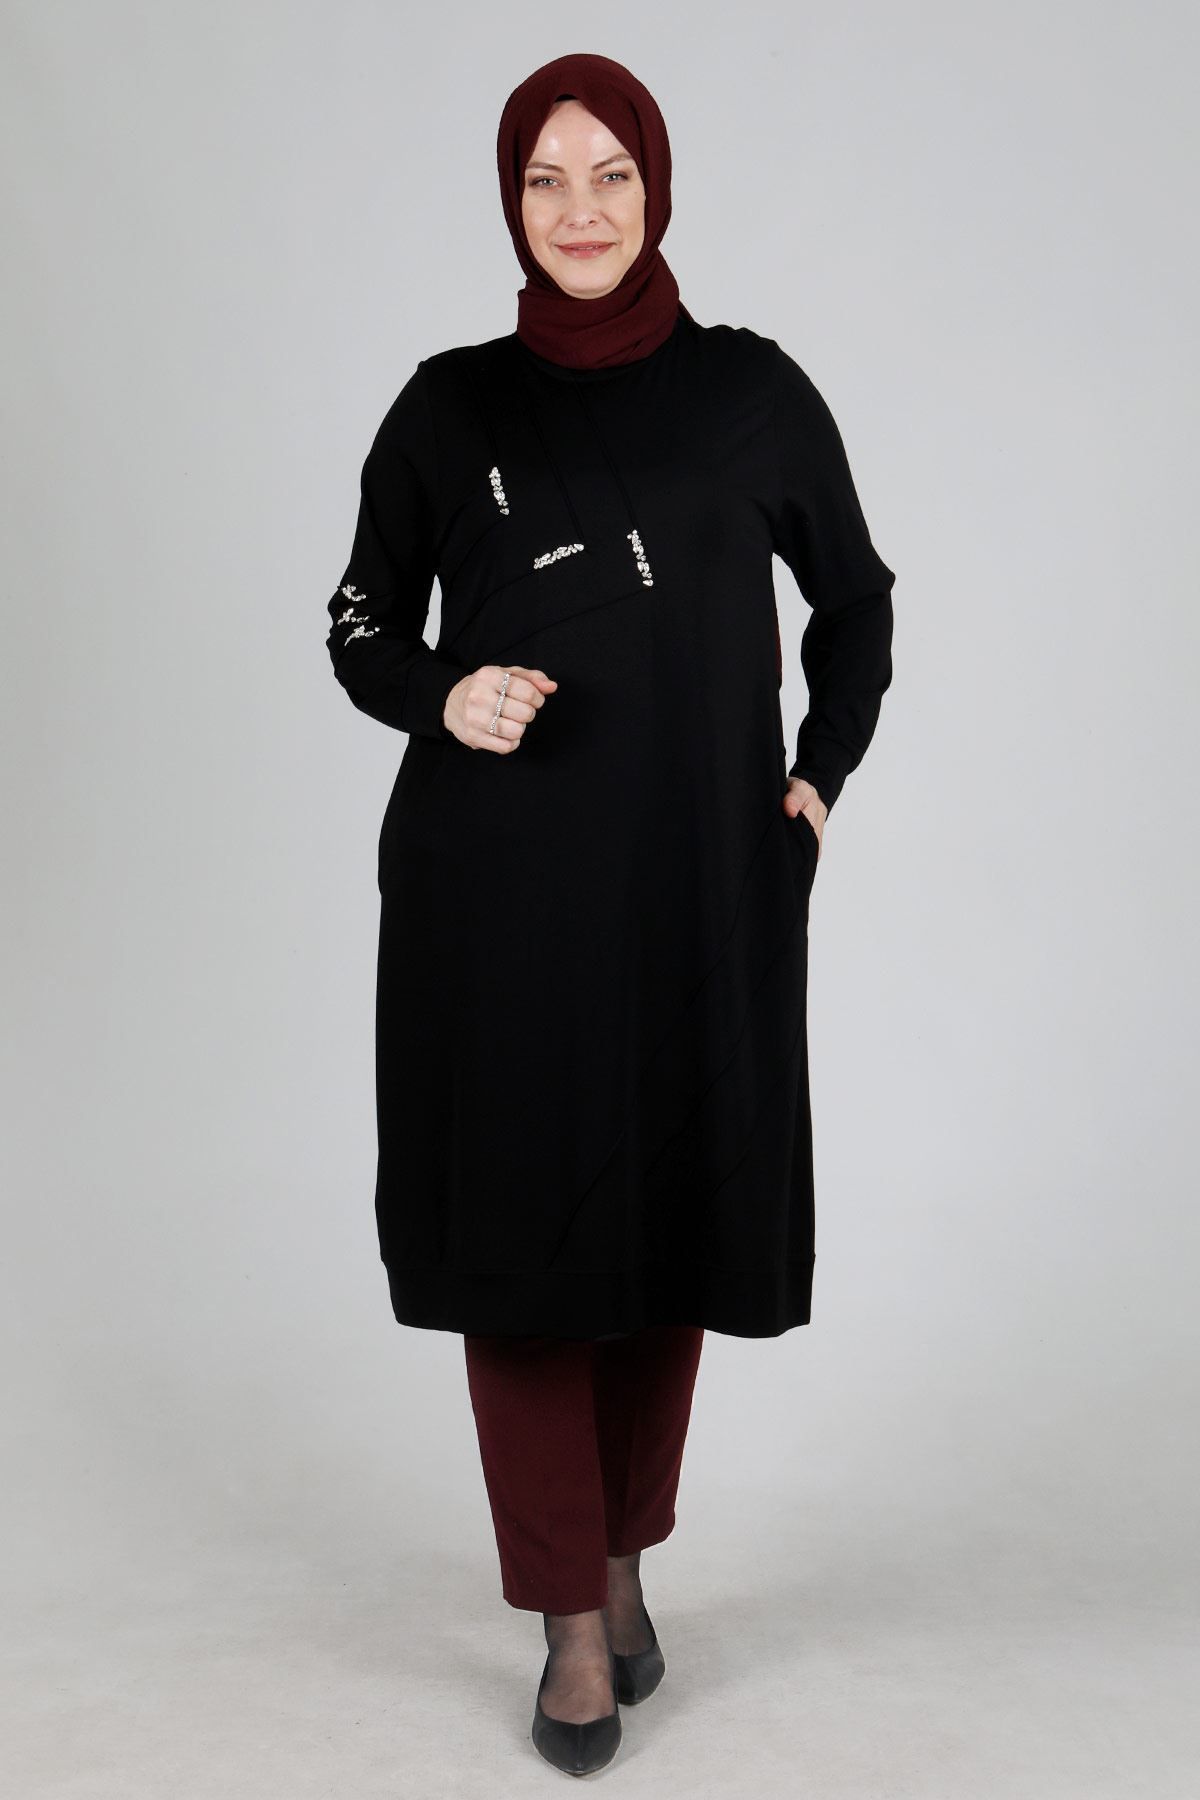 ottoman wear OTW20097 Büyük Beden Tunik Siyah